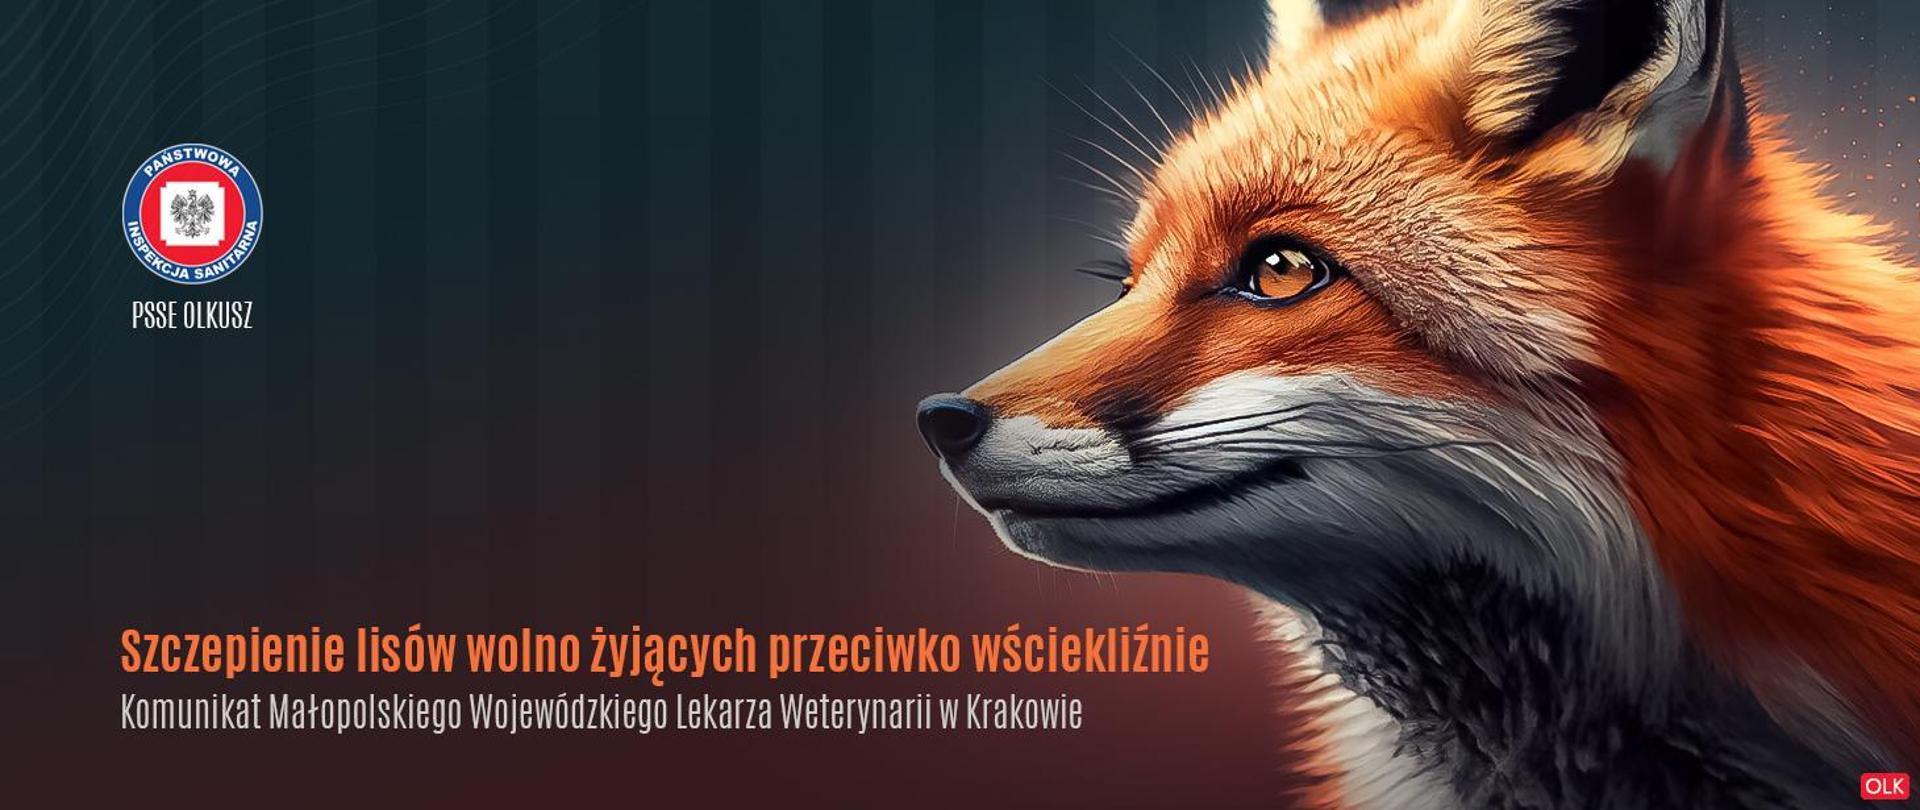 Szczepienie lisów wolno żyjących przeciwko wściekliźnie - komunikat Małopolskiego Lekarza Weterynarii w Krakowie